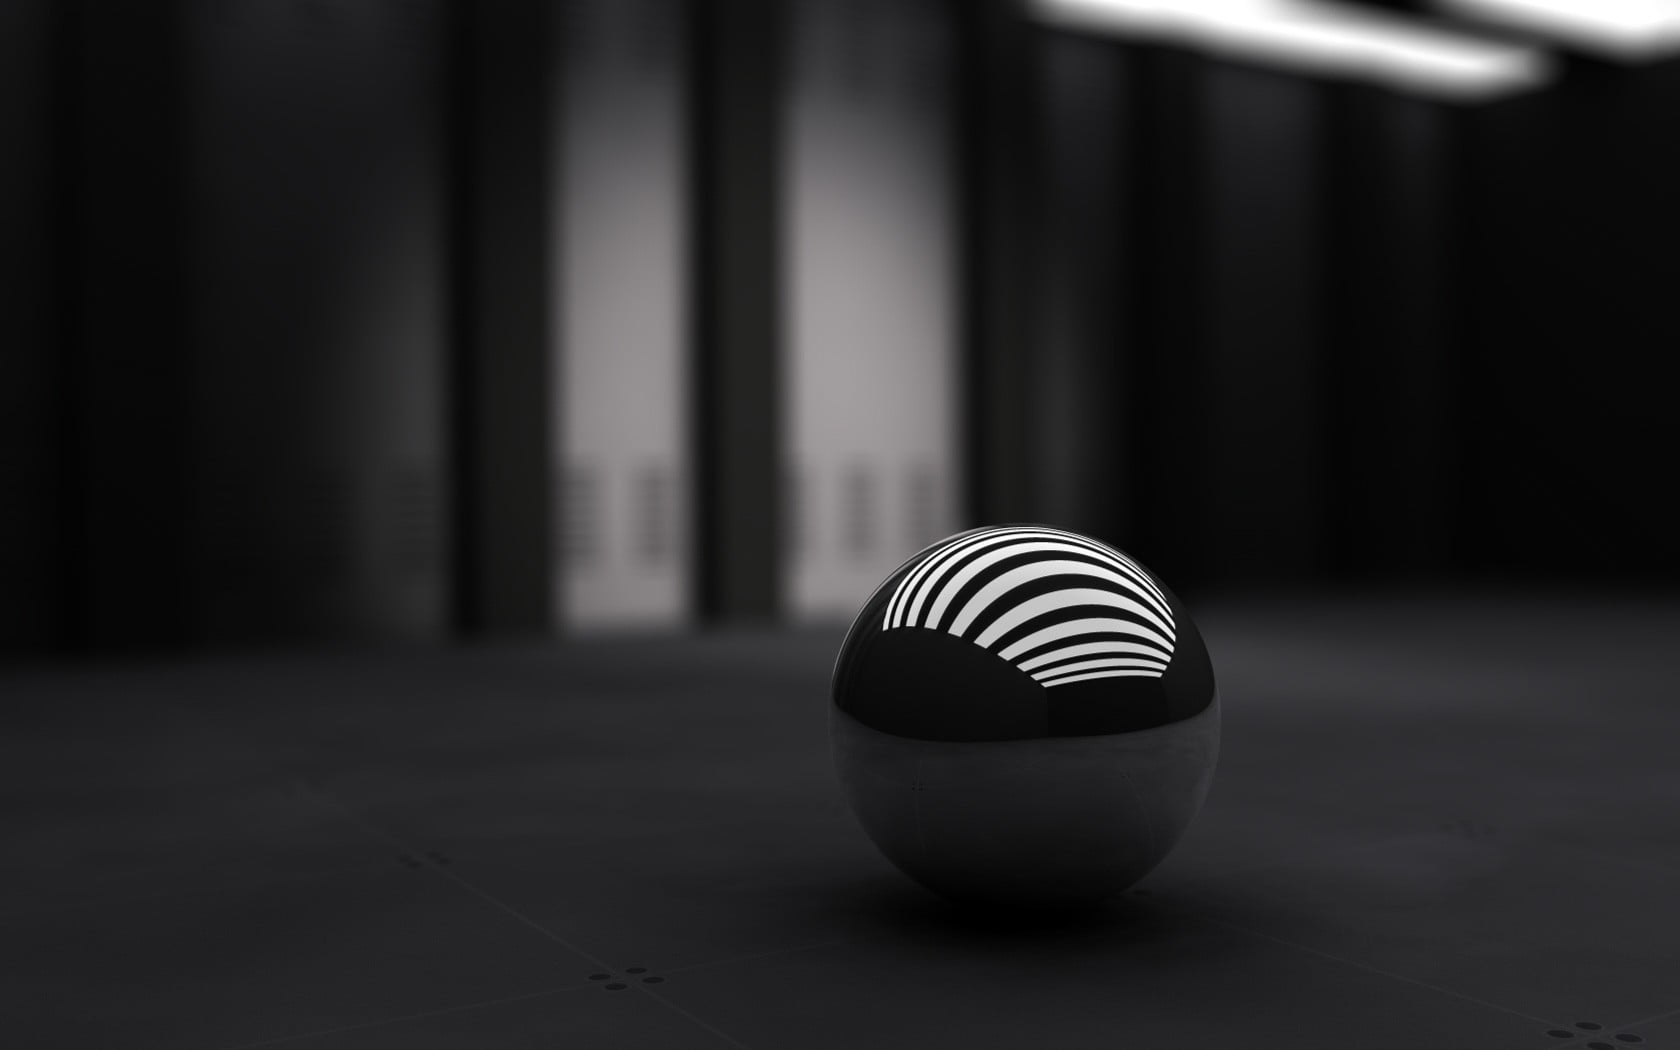 white and black ball, balls, monochrome